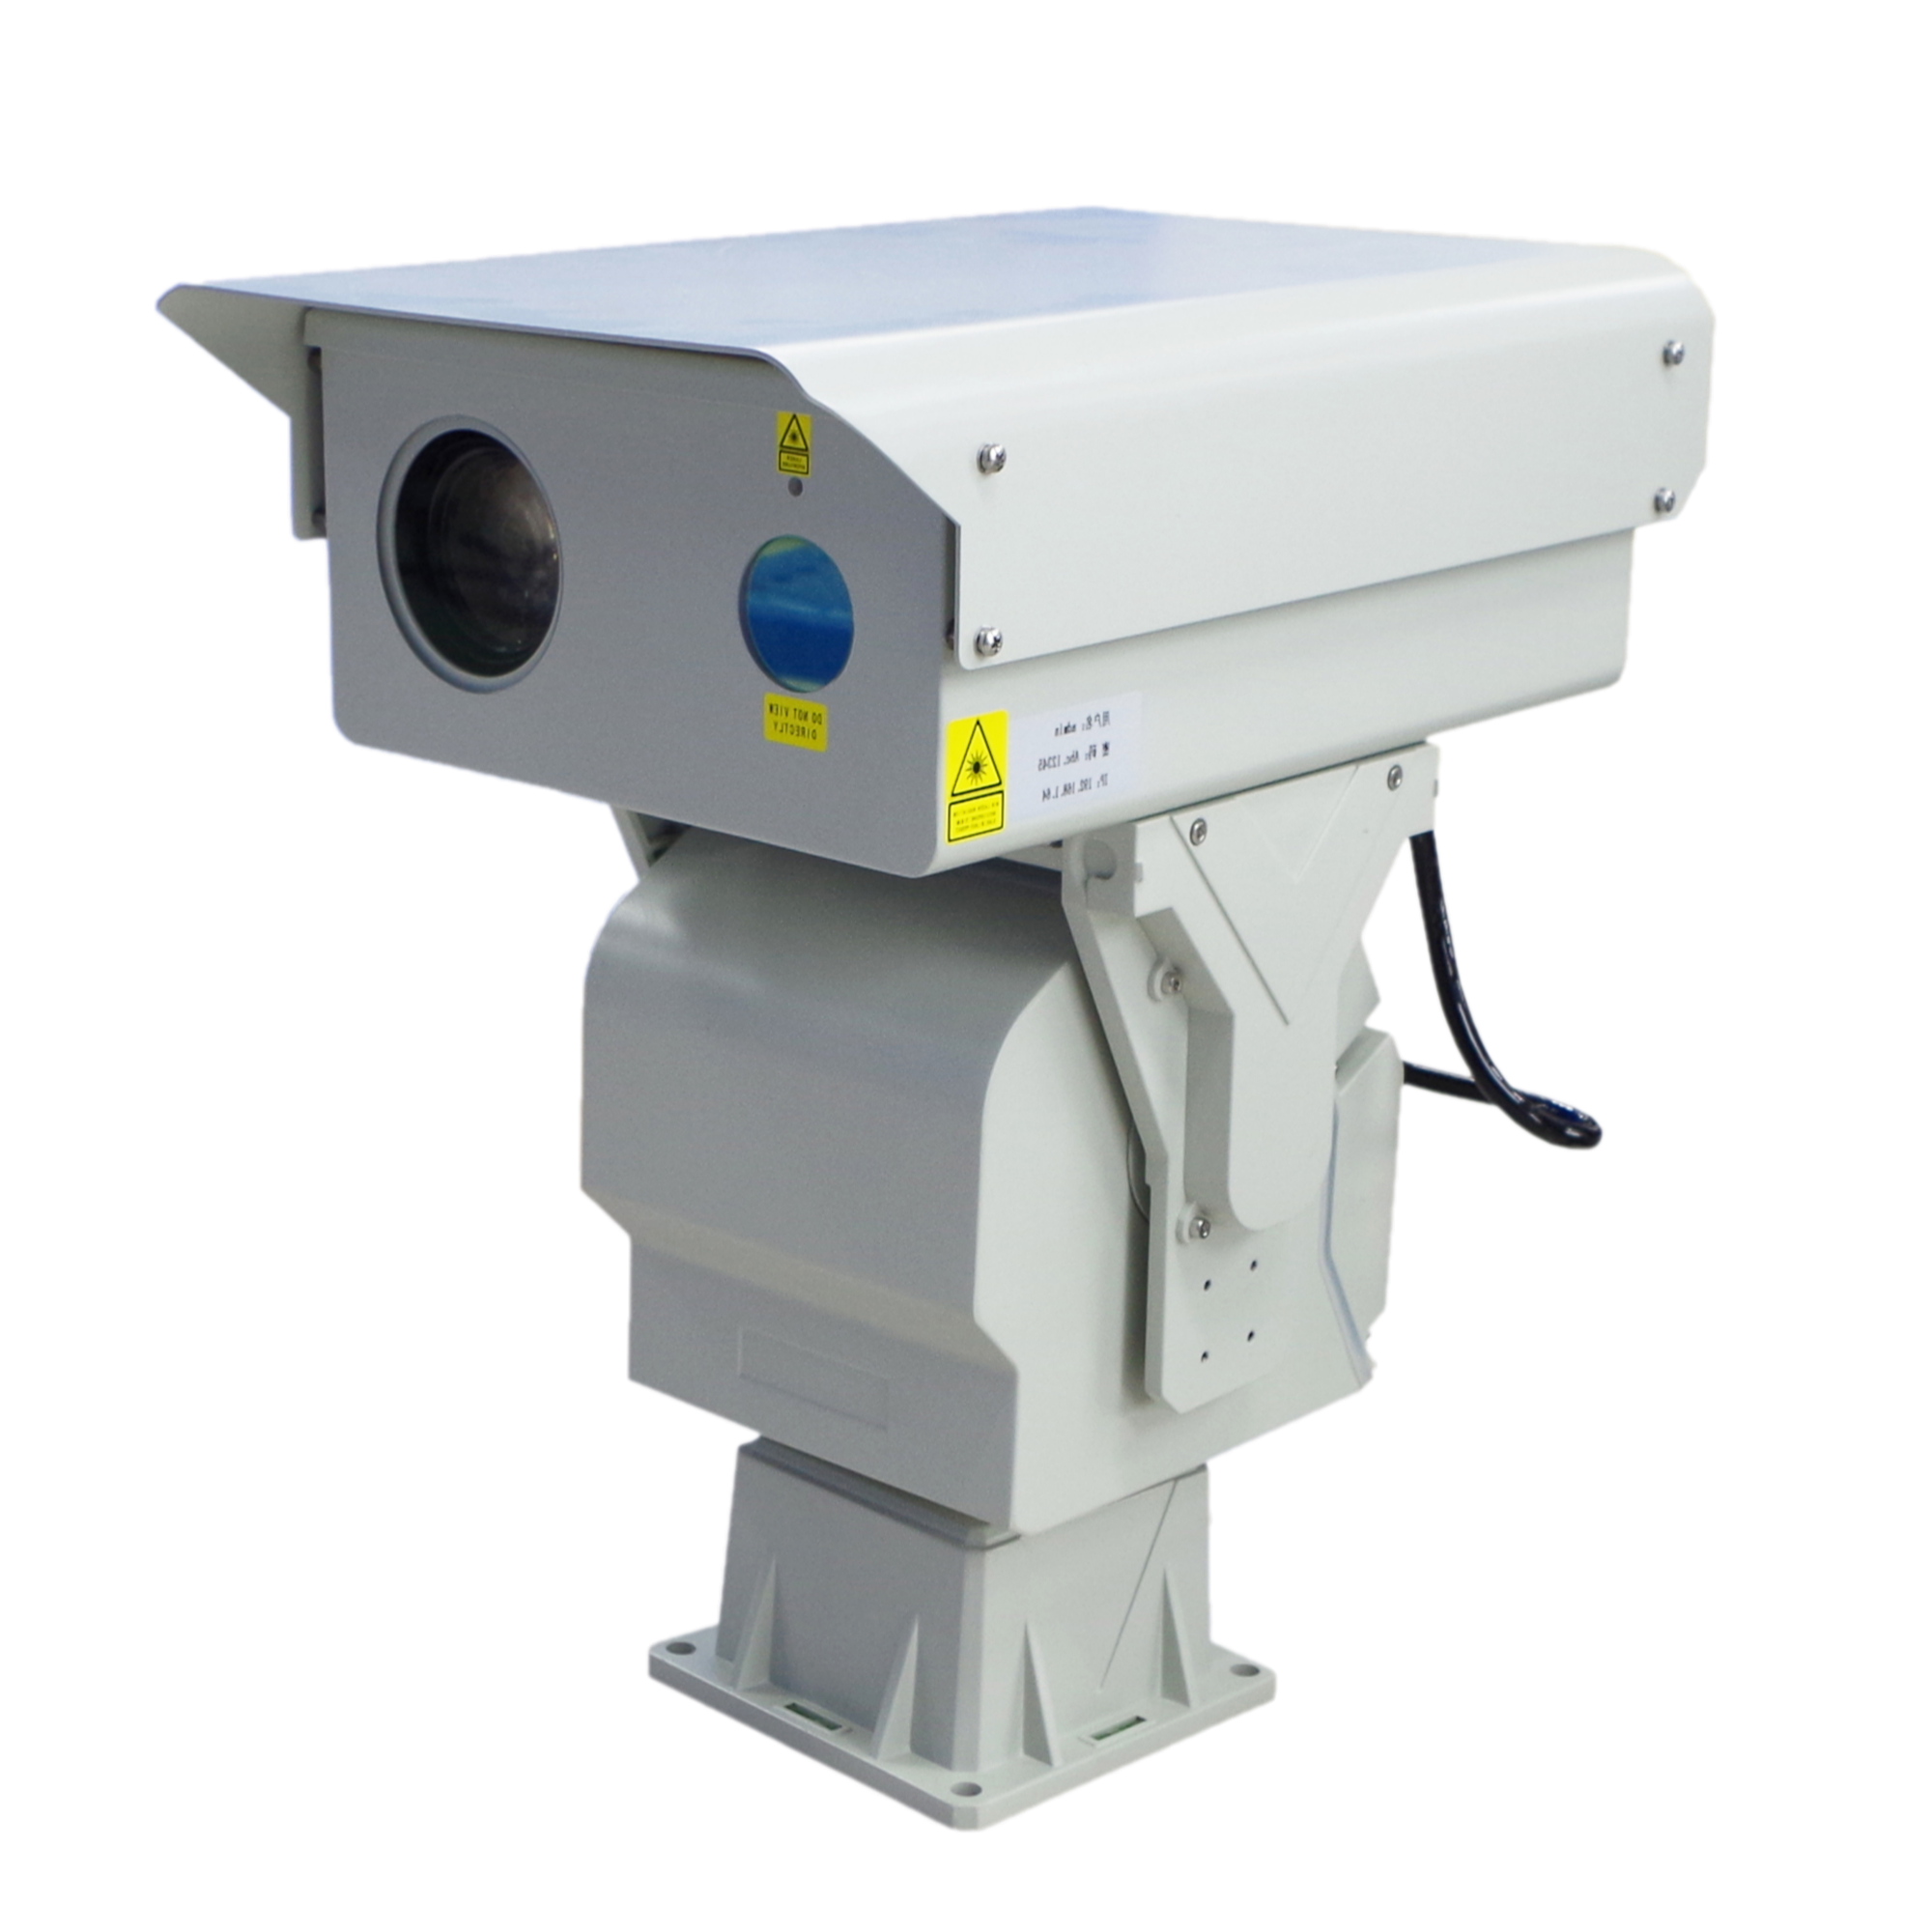 Laserska PTZ kamera dugog dometa od 10 km